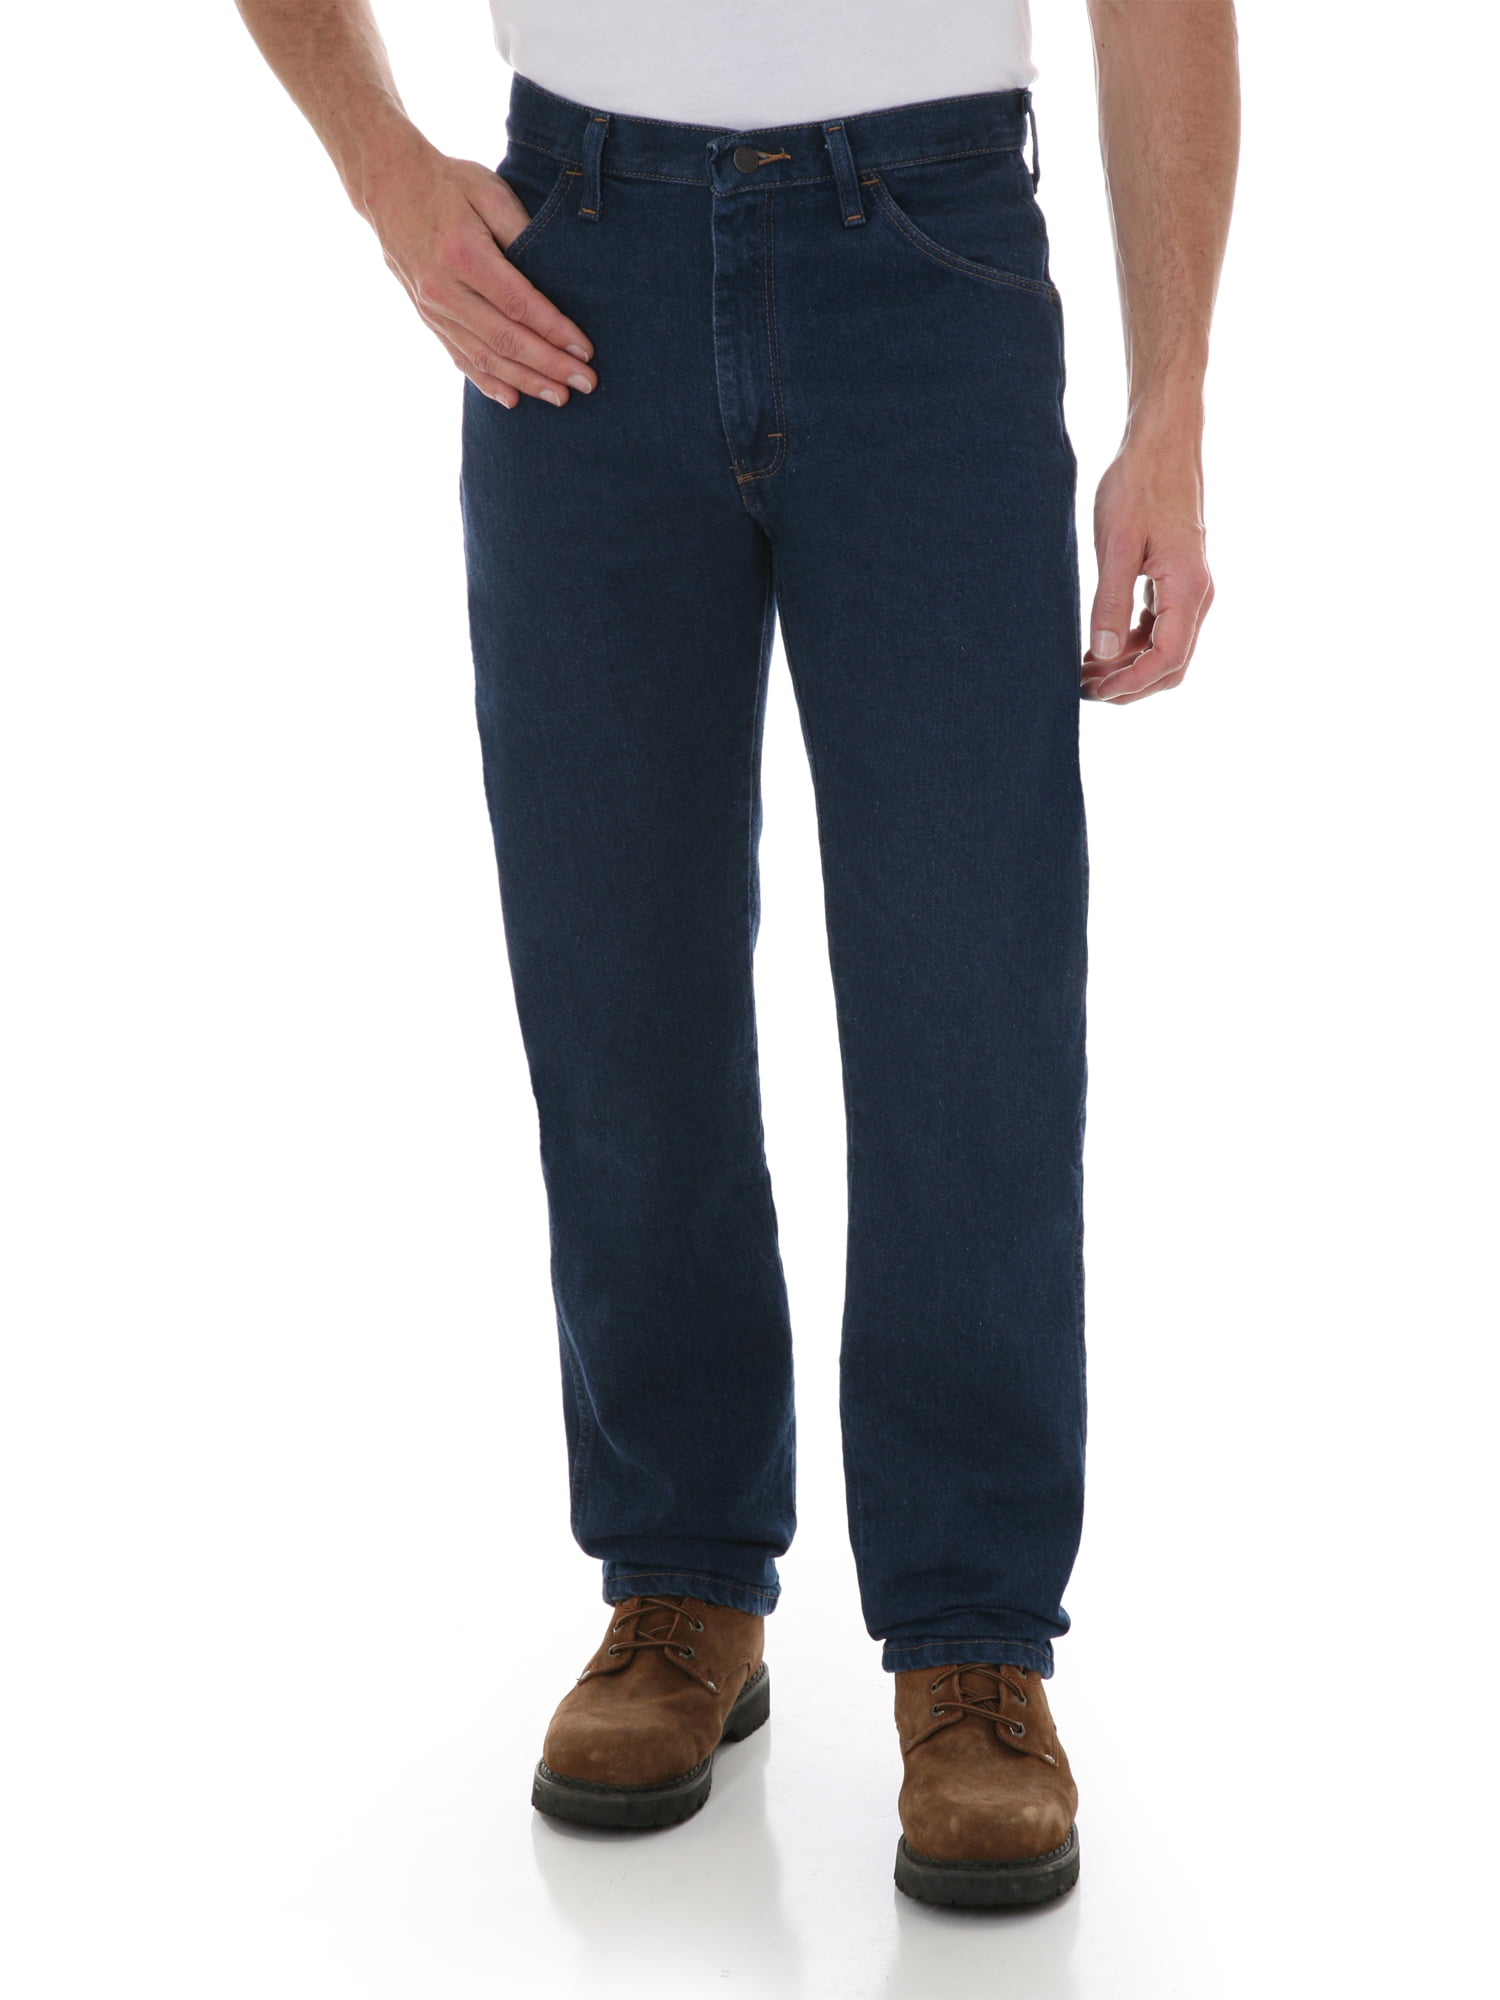 Rustler - Rustler Men's and Big Men's Regular Fit Jeans - Walmart.com ...